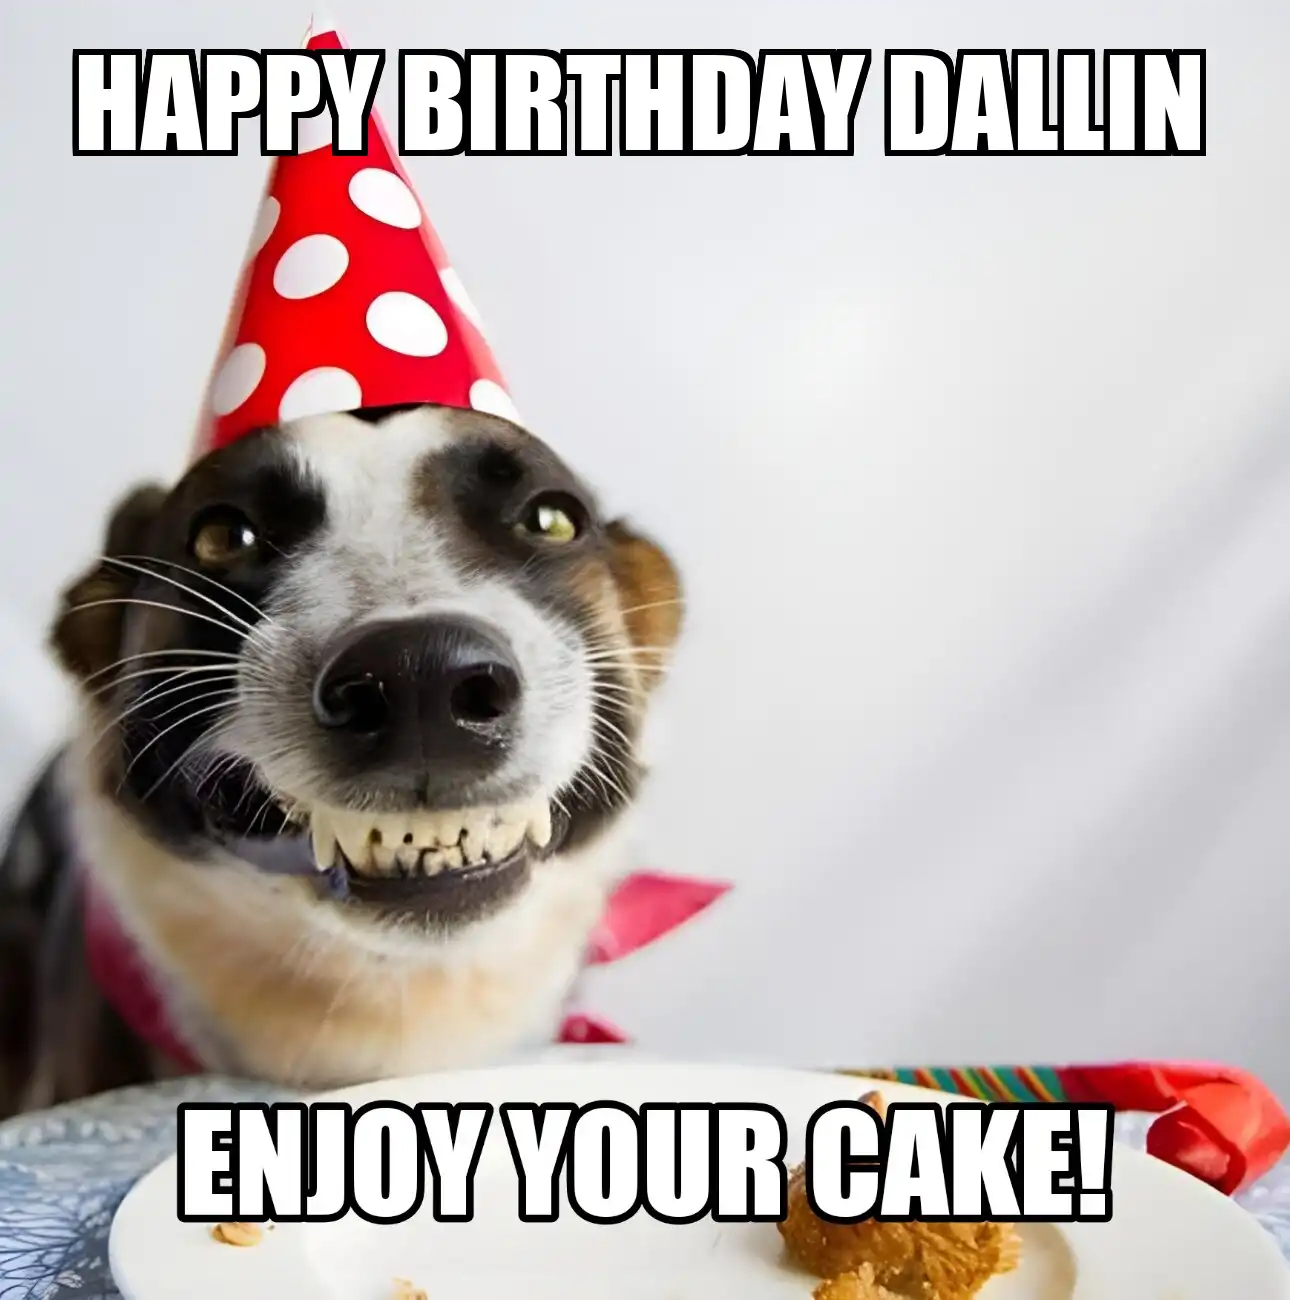 Happy Birthday Dallin Enjoy Your Cake Dog Meme